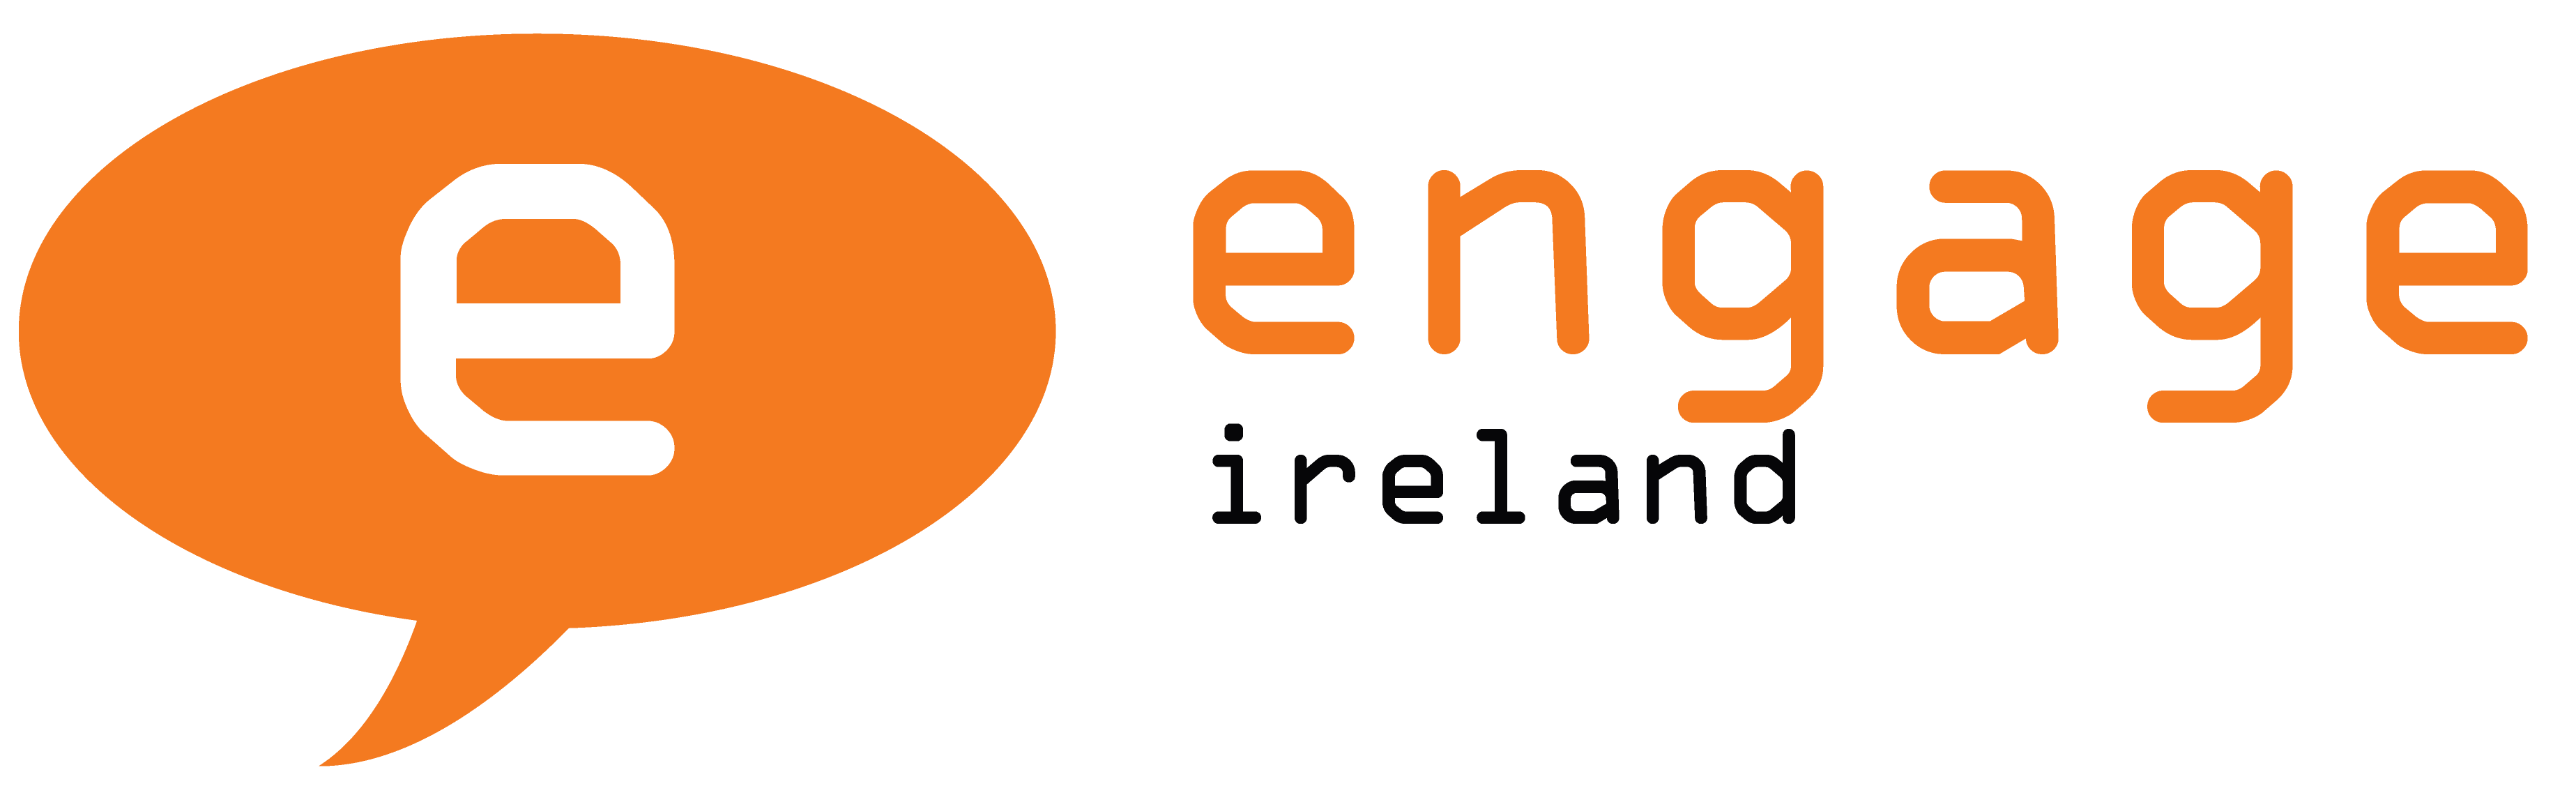 Engage Ireland logo